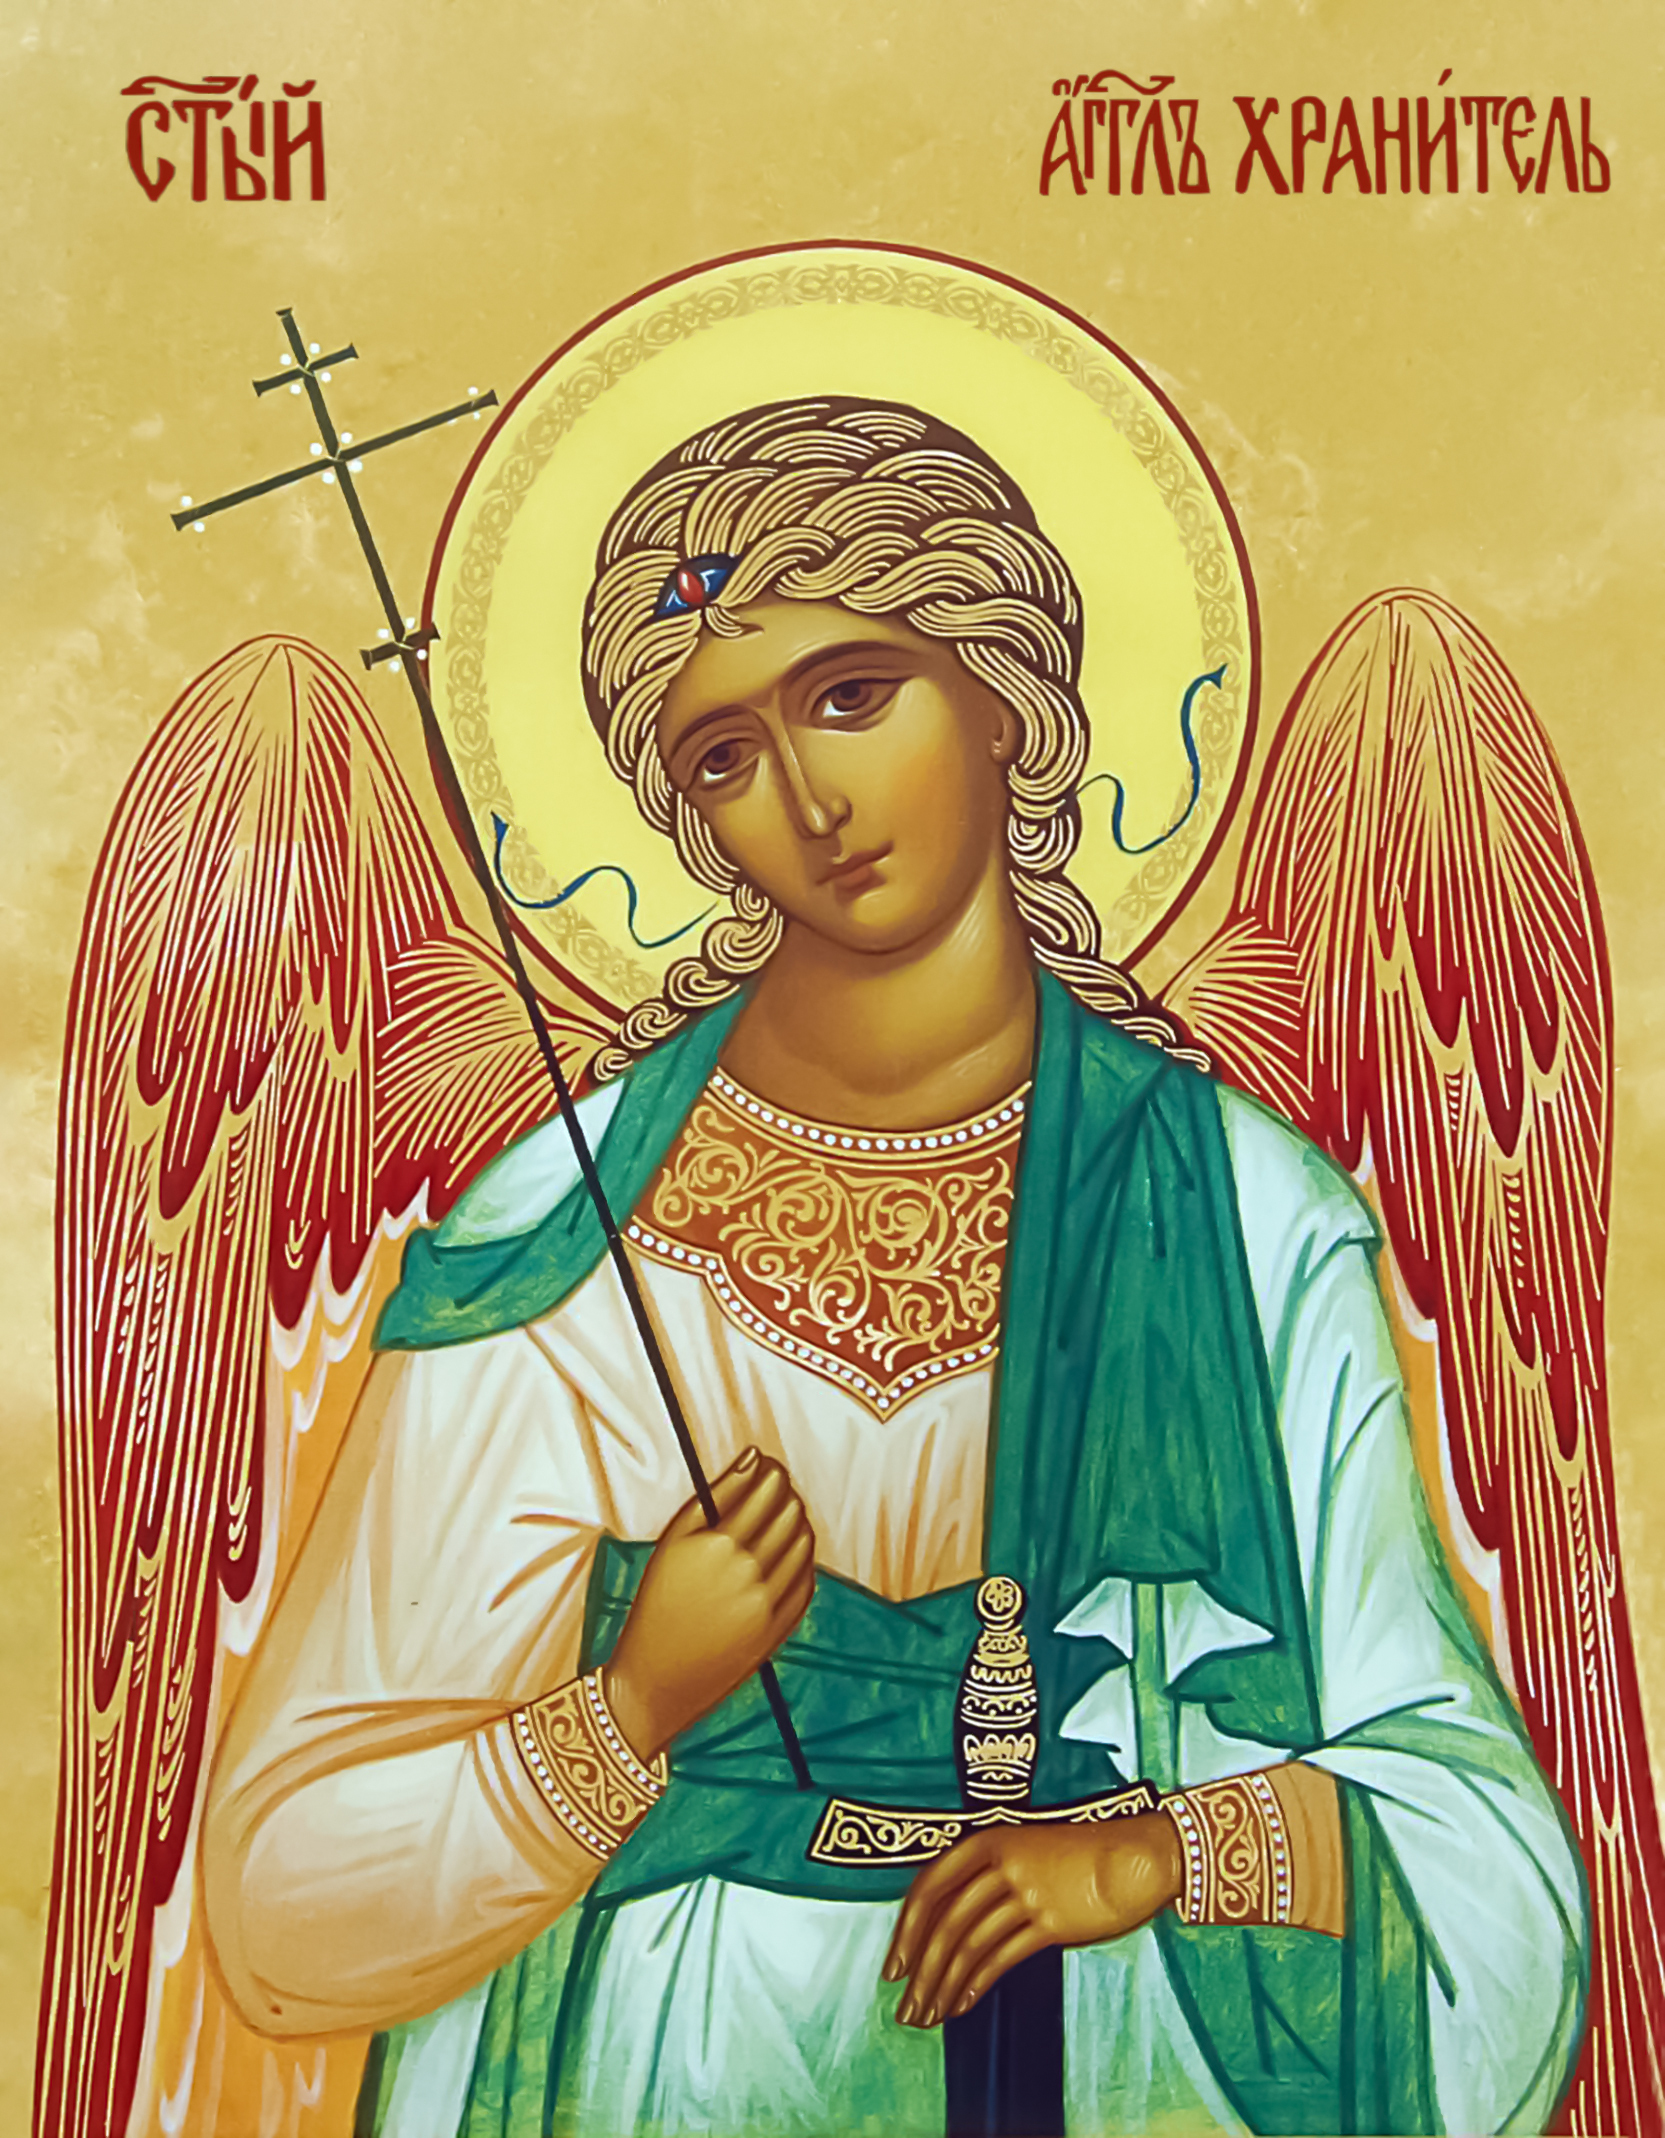 Бакариил ангел хранитель икона